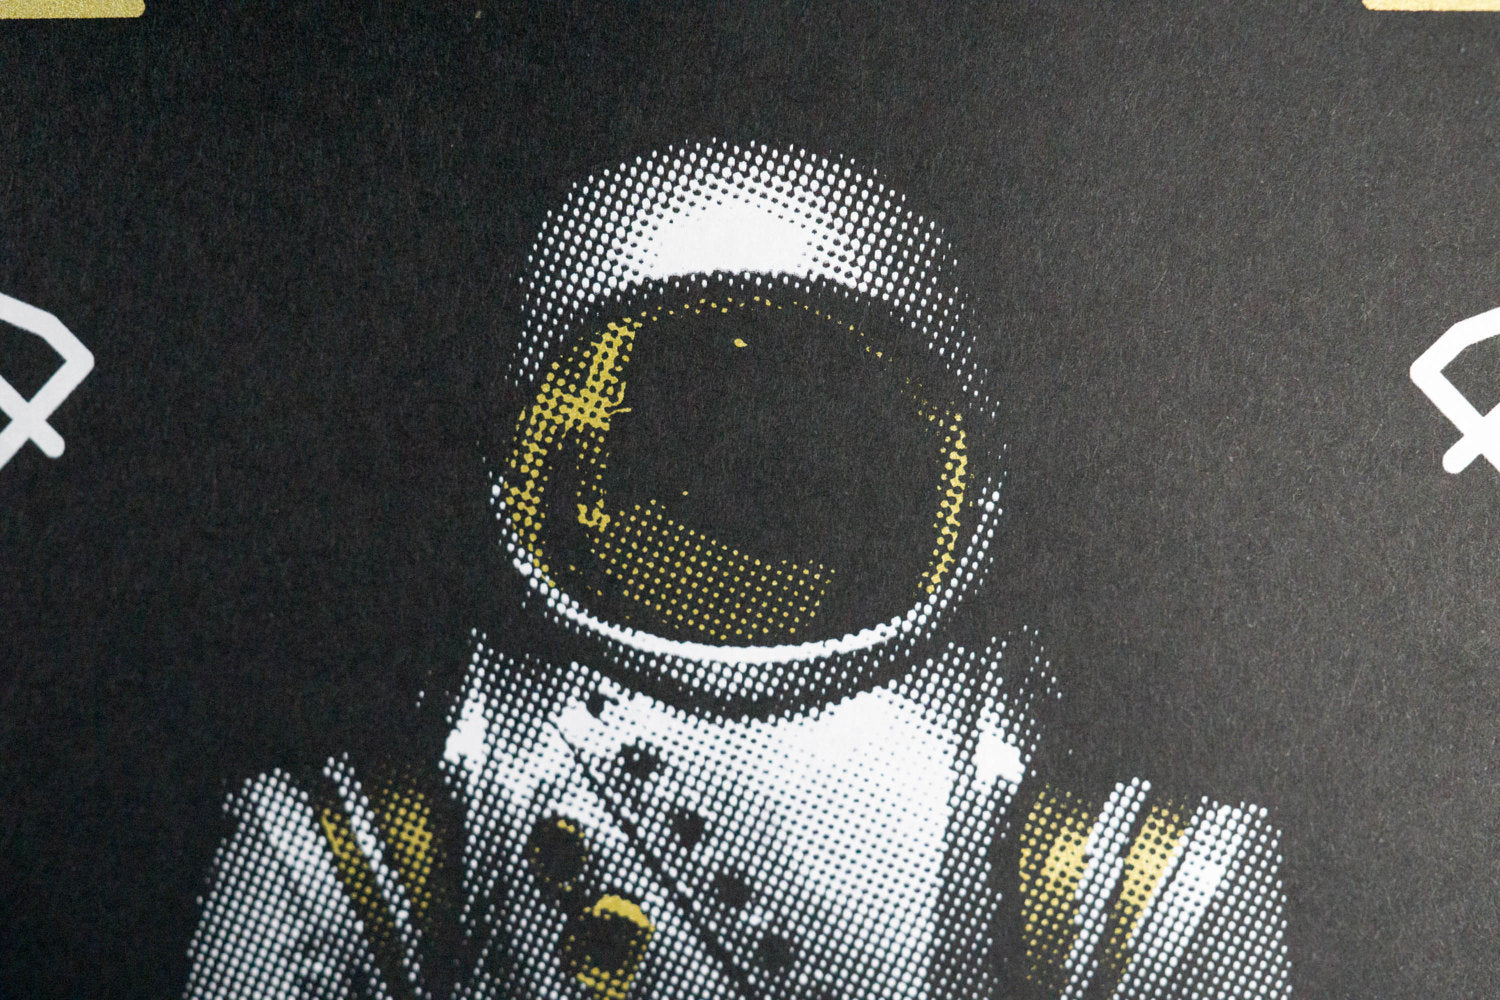 Spacesuit, Litton RX-2 Hardsuit - Space Exploration Poster